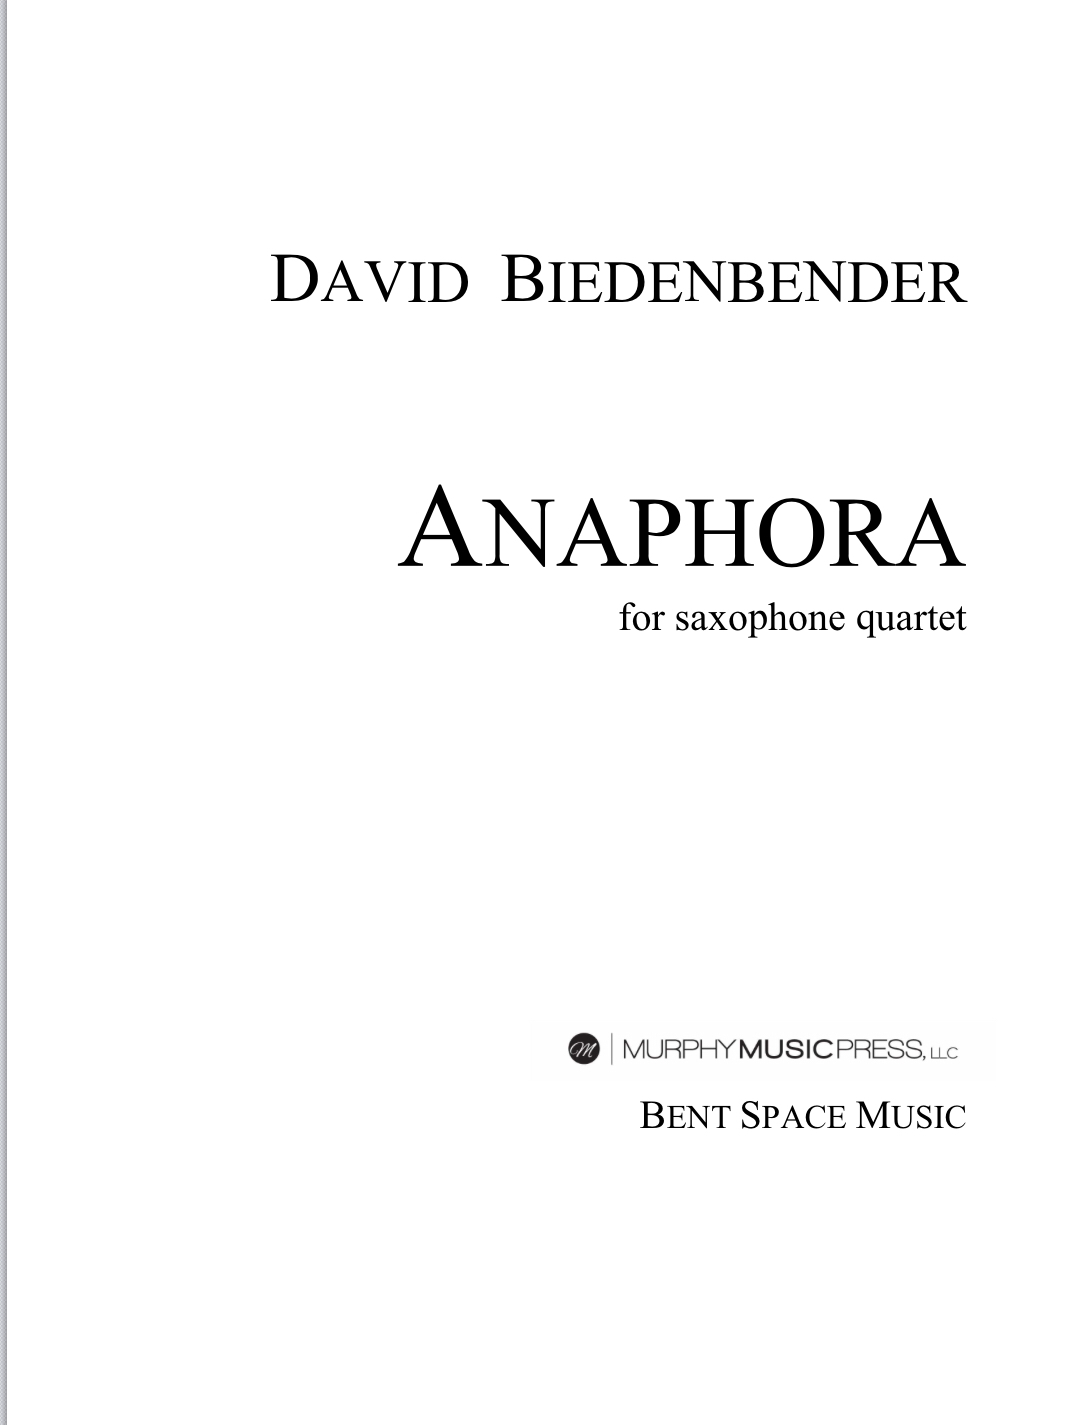 Anaphora  by David Biedenbender 